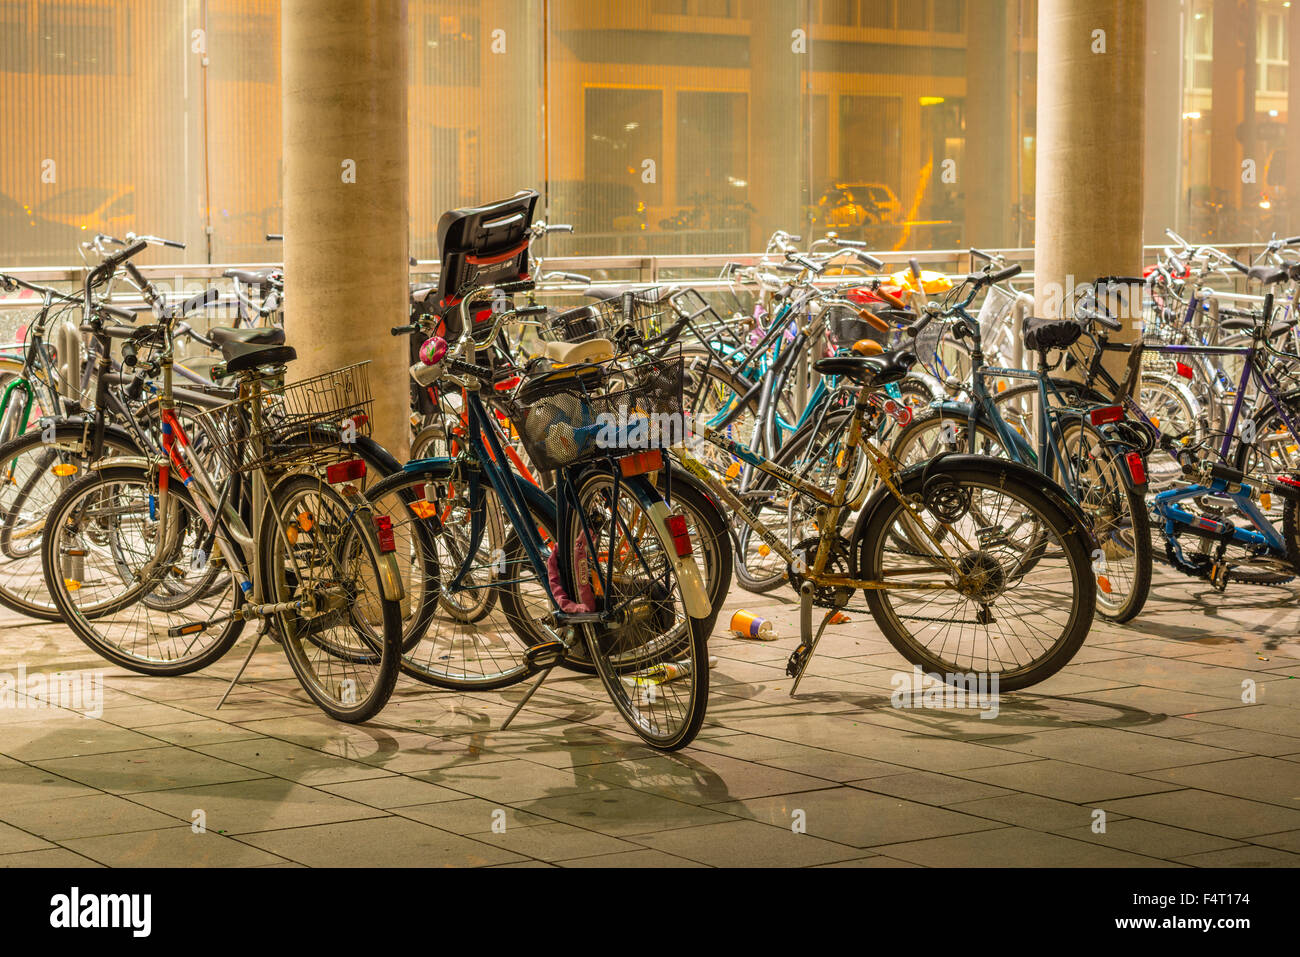 Des vélos en stationnement, l'éclairage, illumination, Breslau, Allemagne, Europe, le stationnement des vélos, vélos, motos, Cologne, Cologne centra Banque D'Images